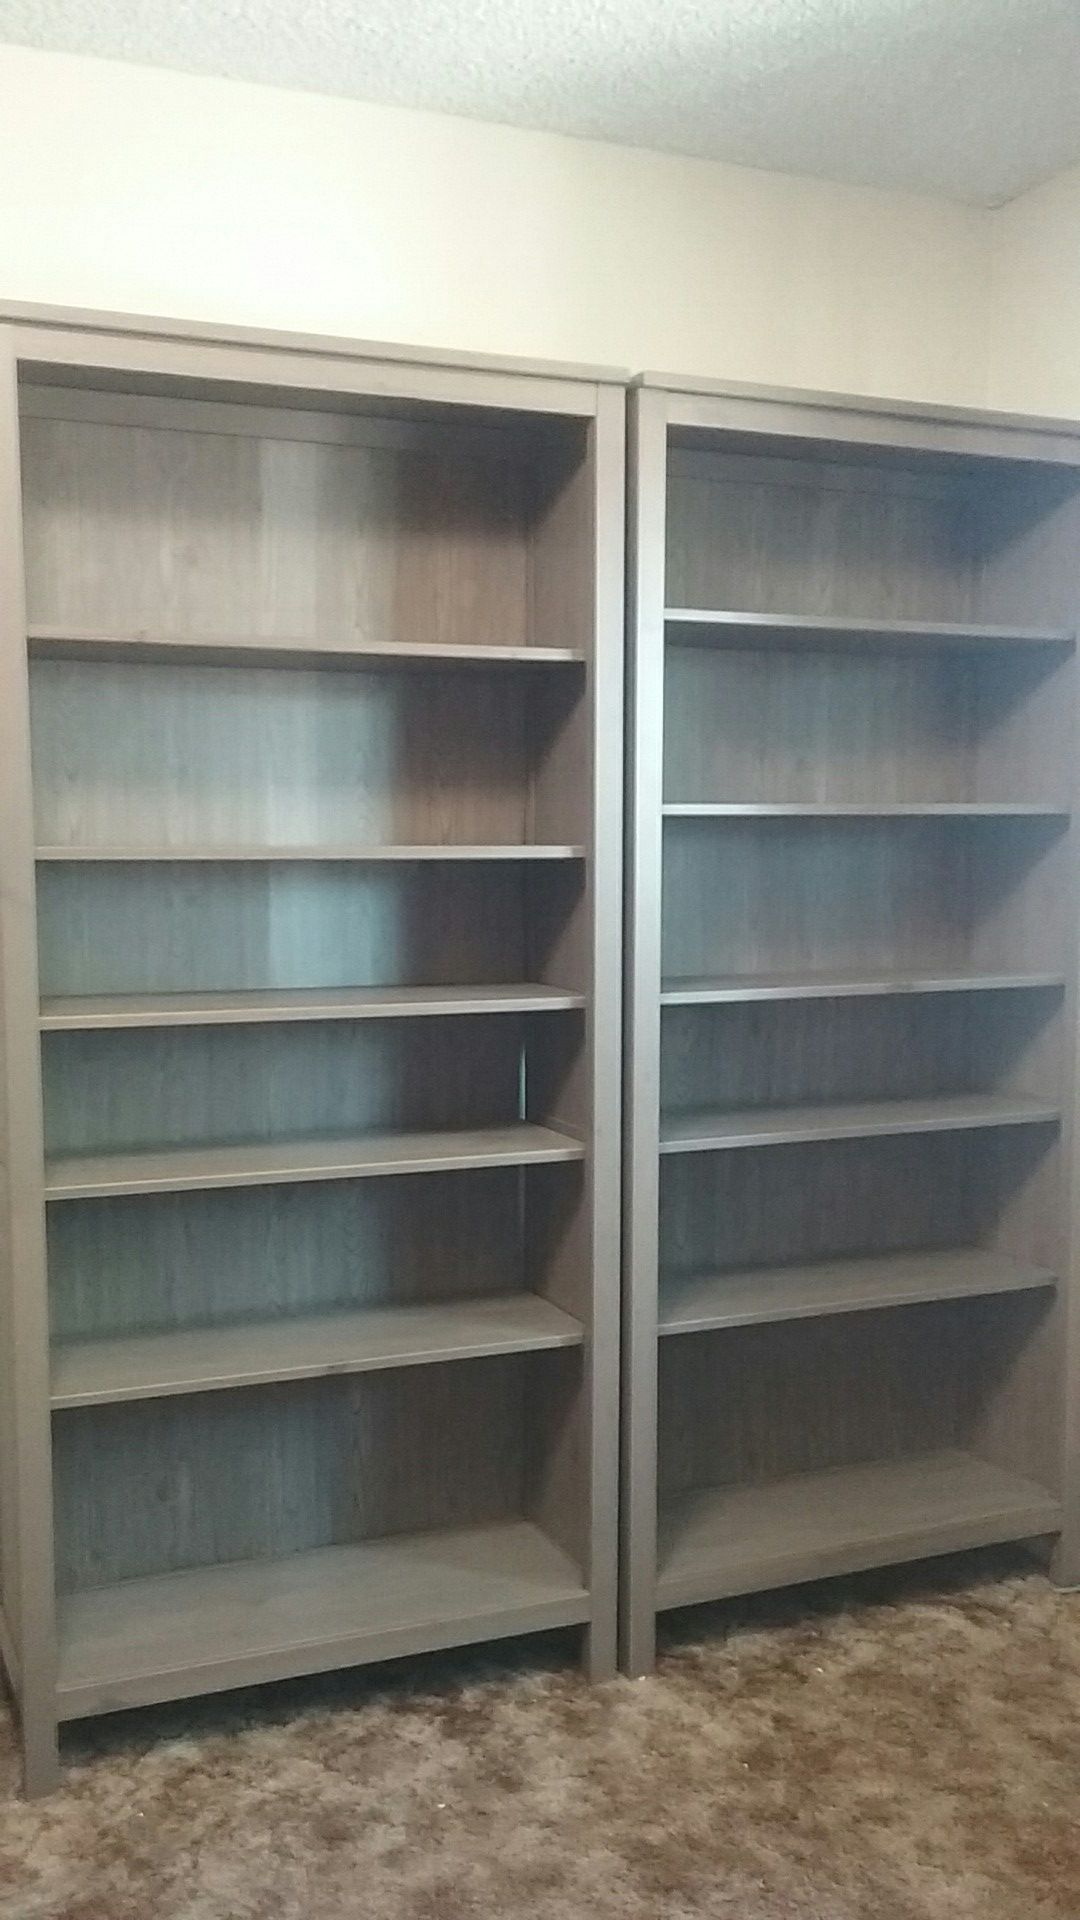 IKEA Hemnes Bookshelves $100 for 2